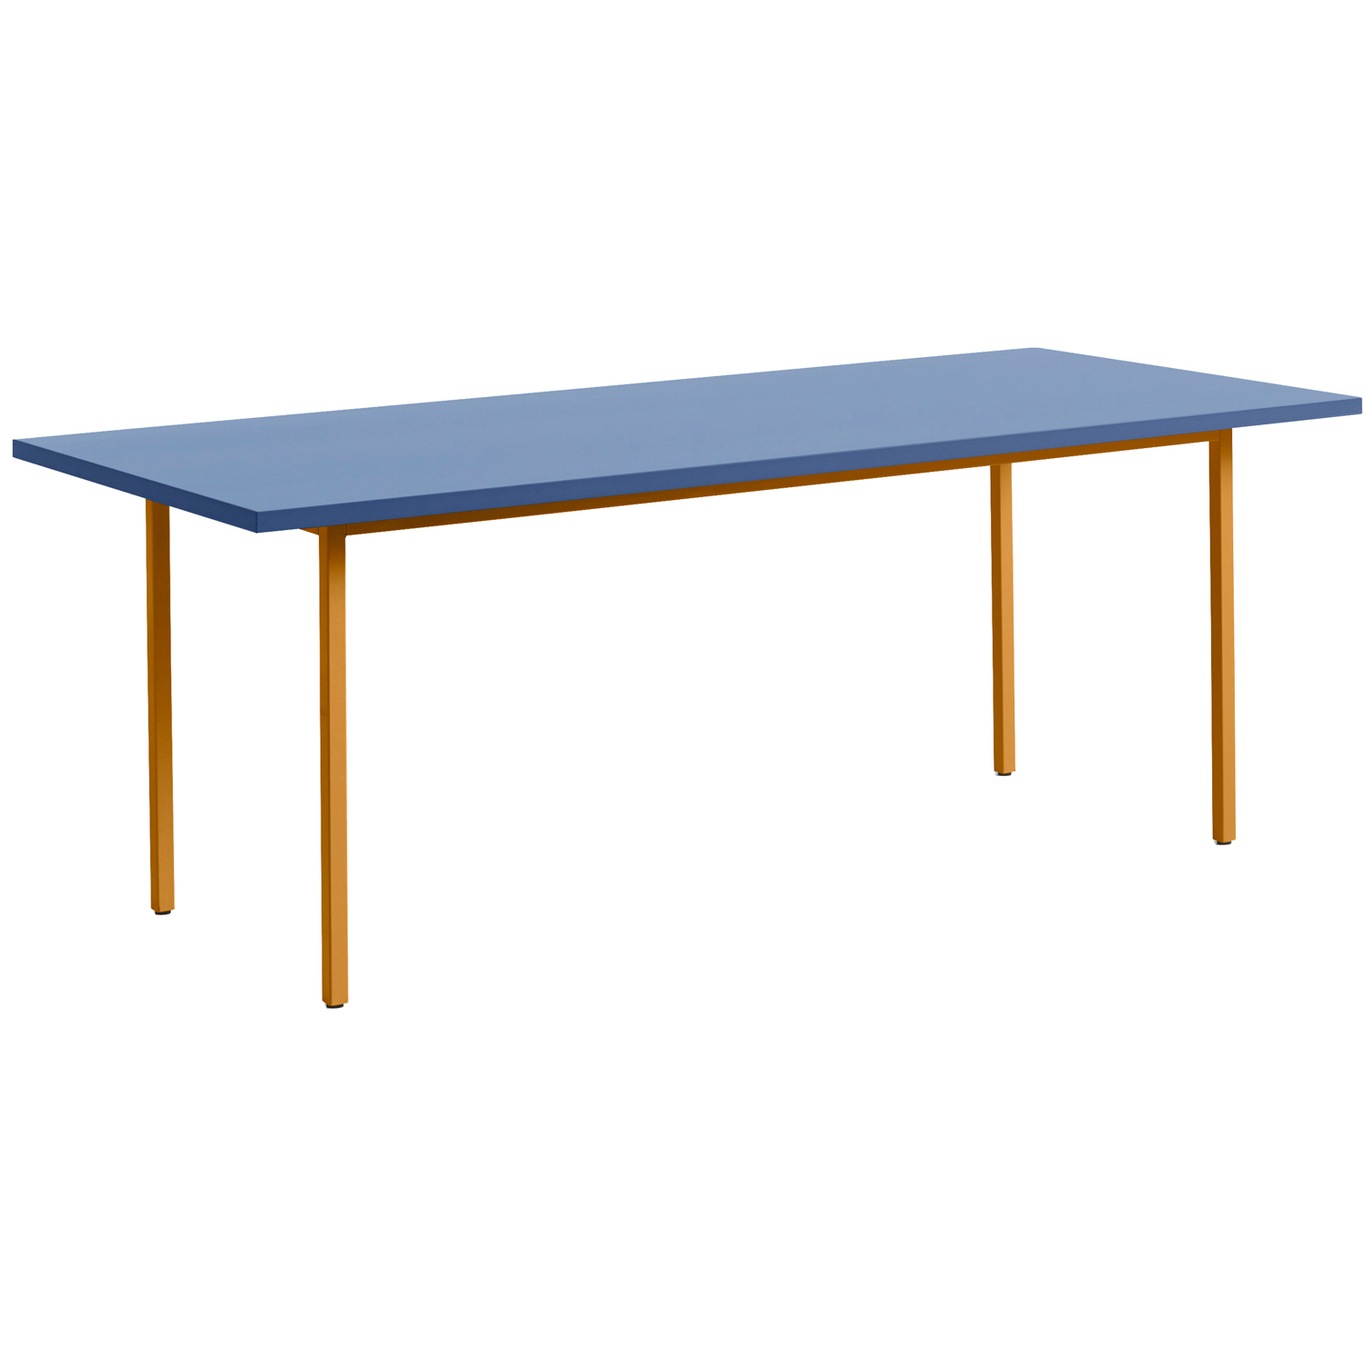 Two-Colour Tisch 200x90 cm, Ochre / Blå